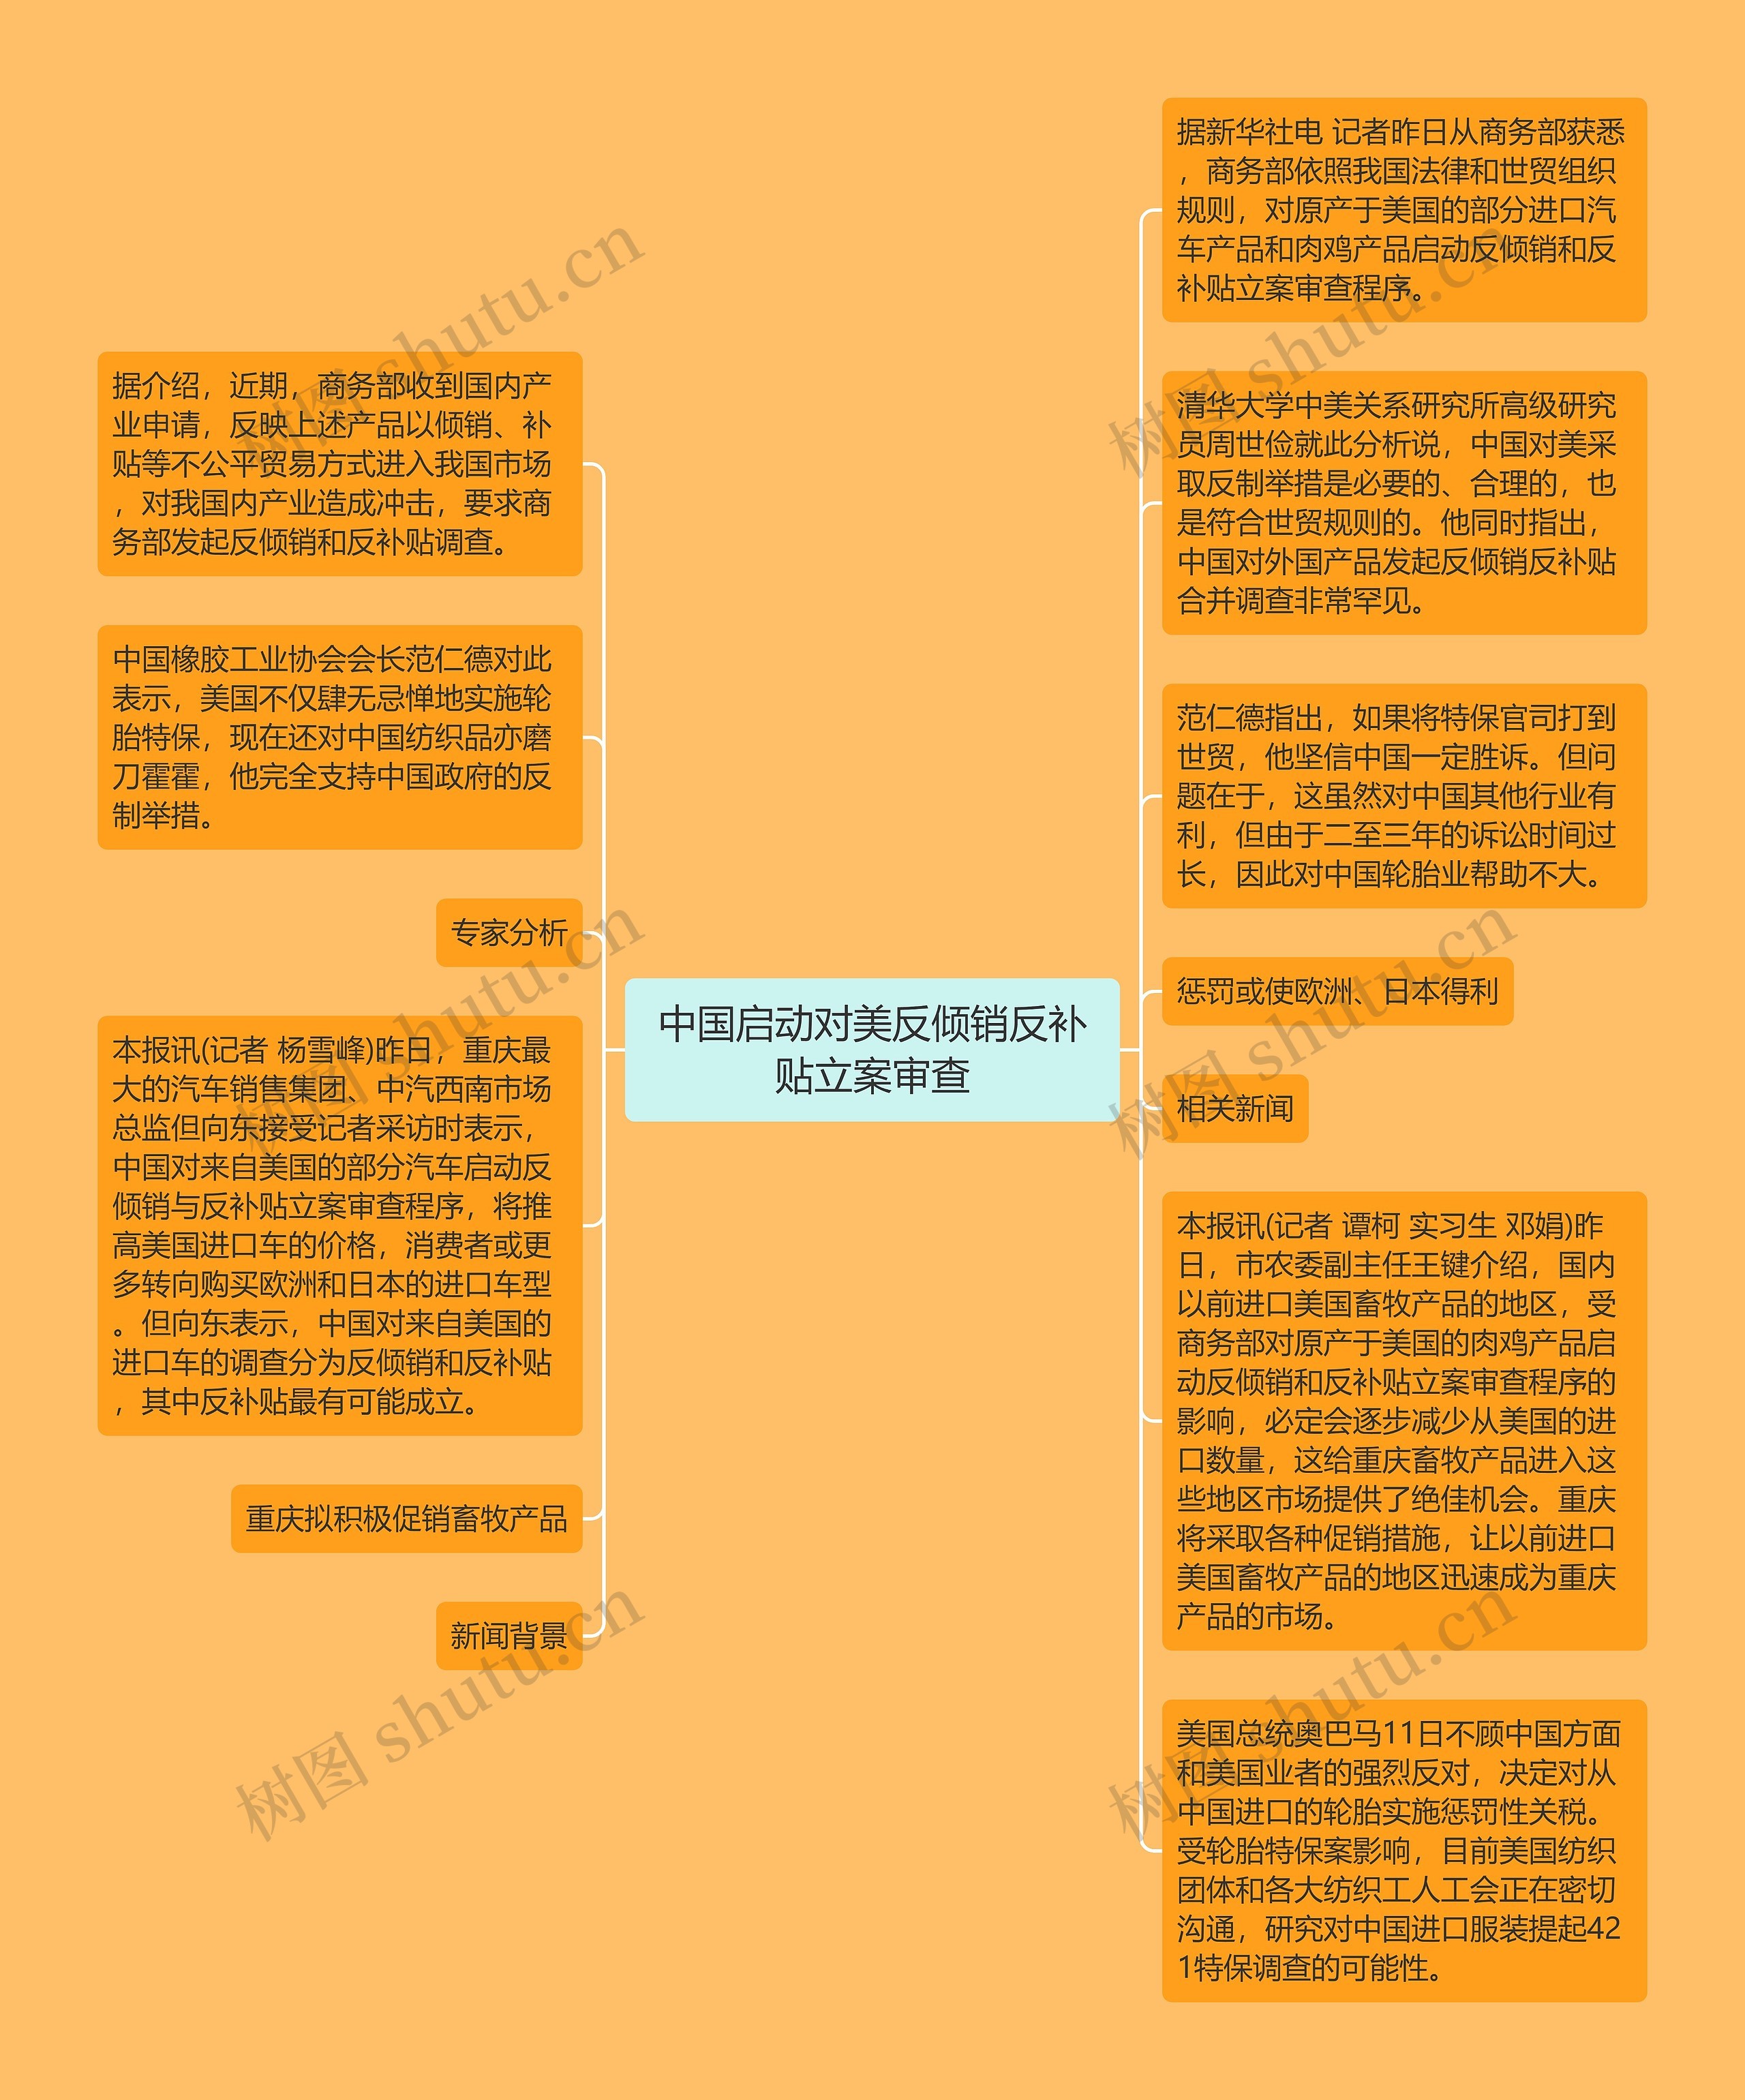 中国启动对美反倾销反补贴立案审查思维导图